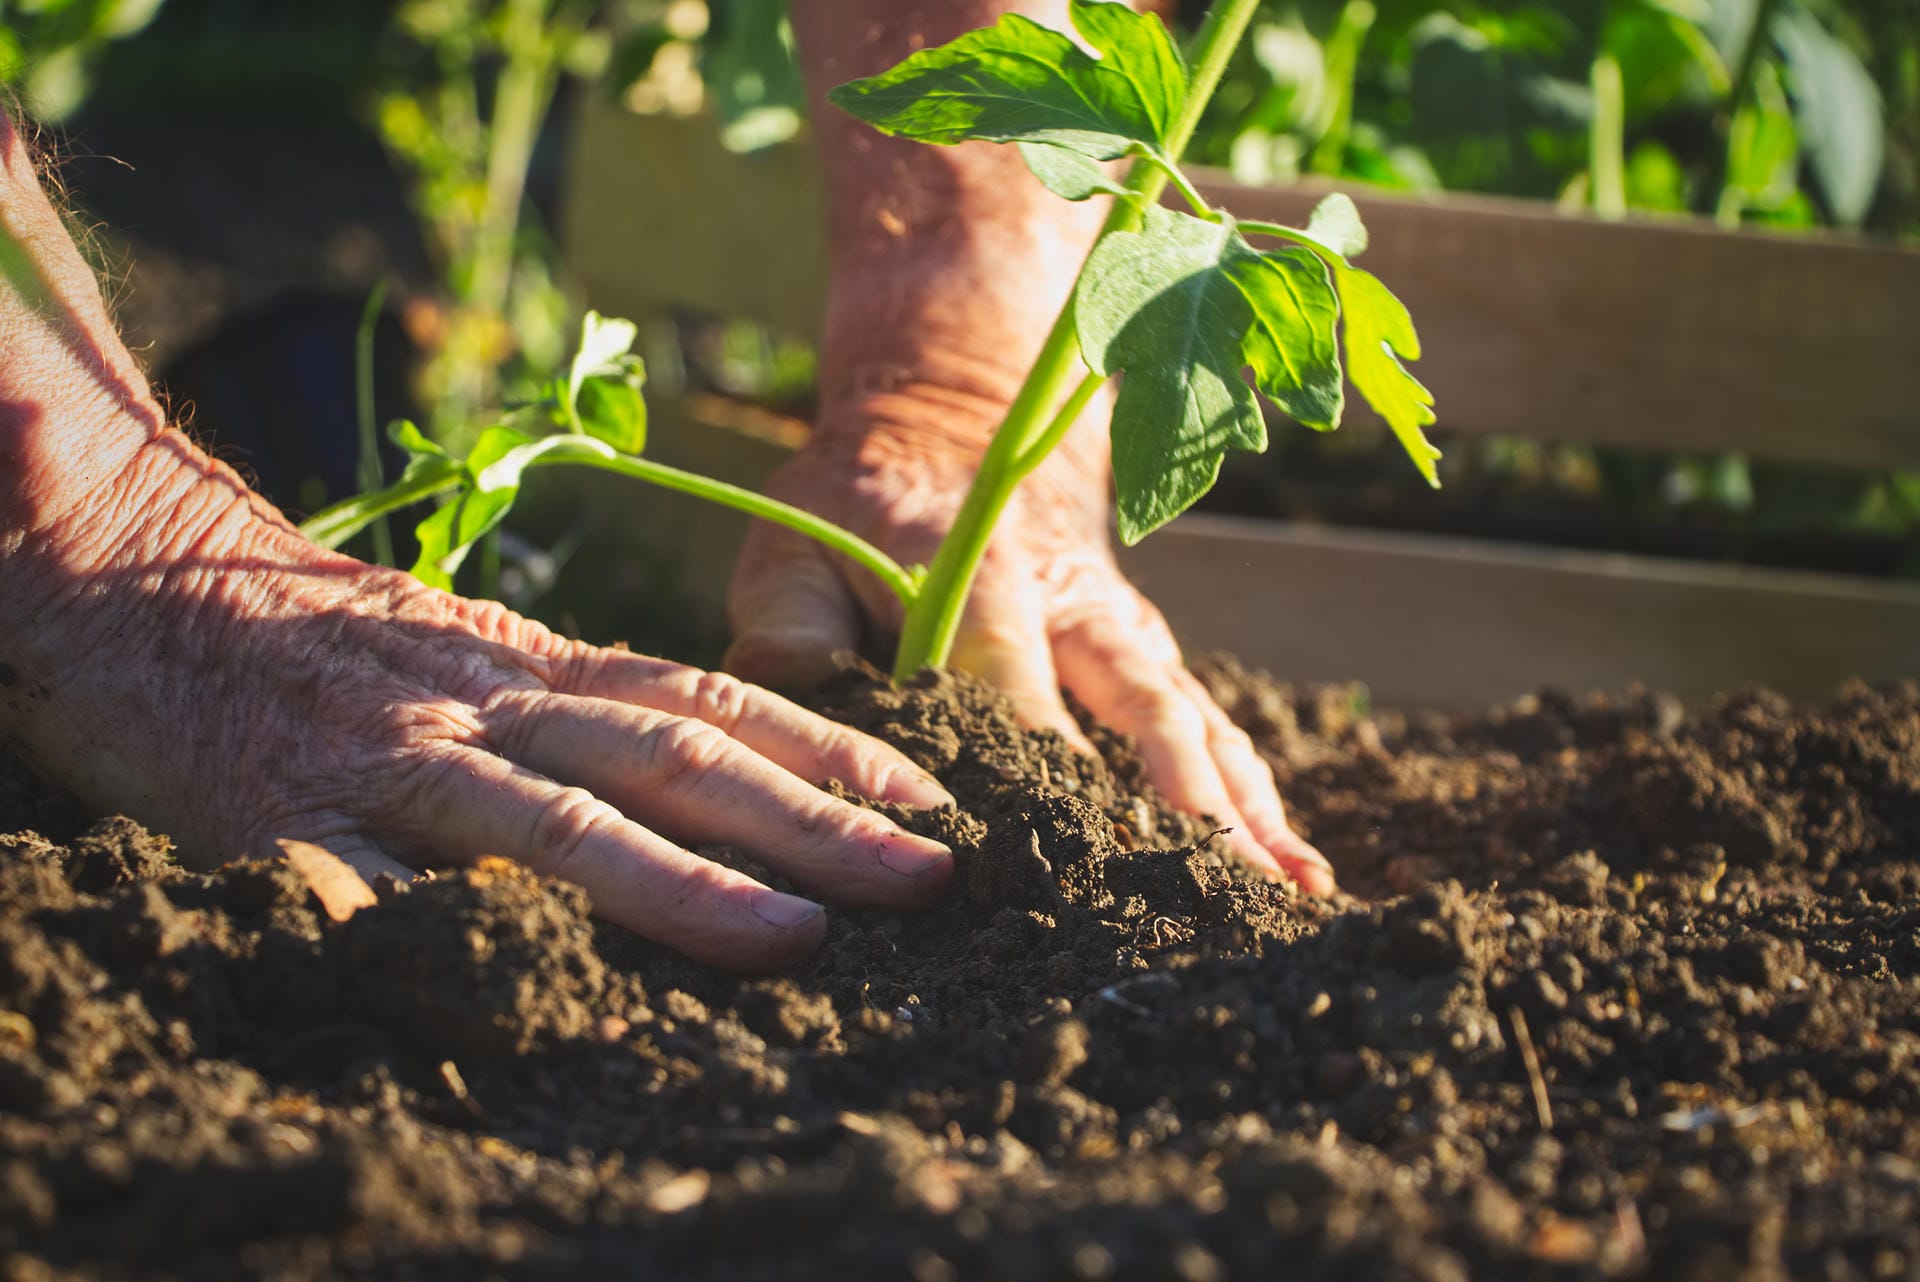 Auch Gartenarbeit gehört zu den sportlichen Aktivitäten, die für Ältere geeignet sind. Das Pflanzen, Pflegen und Ernten wirkt nicht nur positiv auf die Psyche, sondern gleicht einem mäßigen Kardiotraining. Daher wird Gartentherapie in Senioreneinrichtungen immer beliebter.